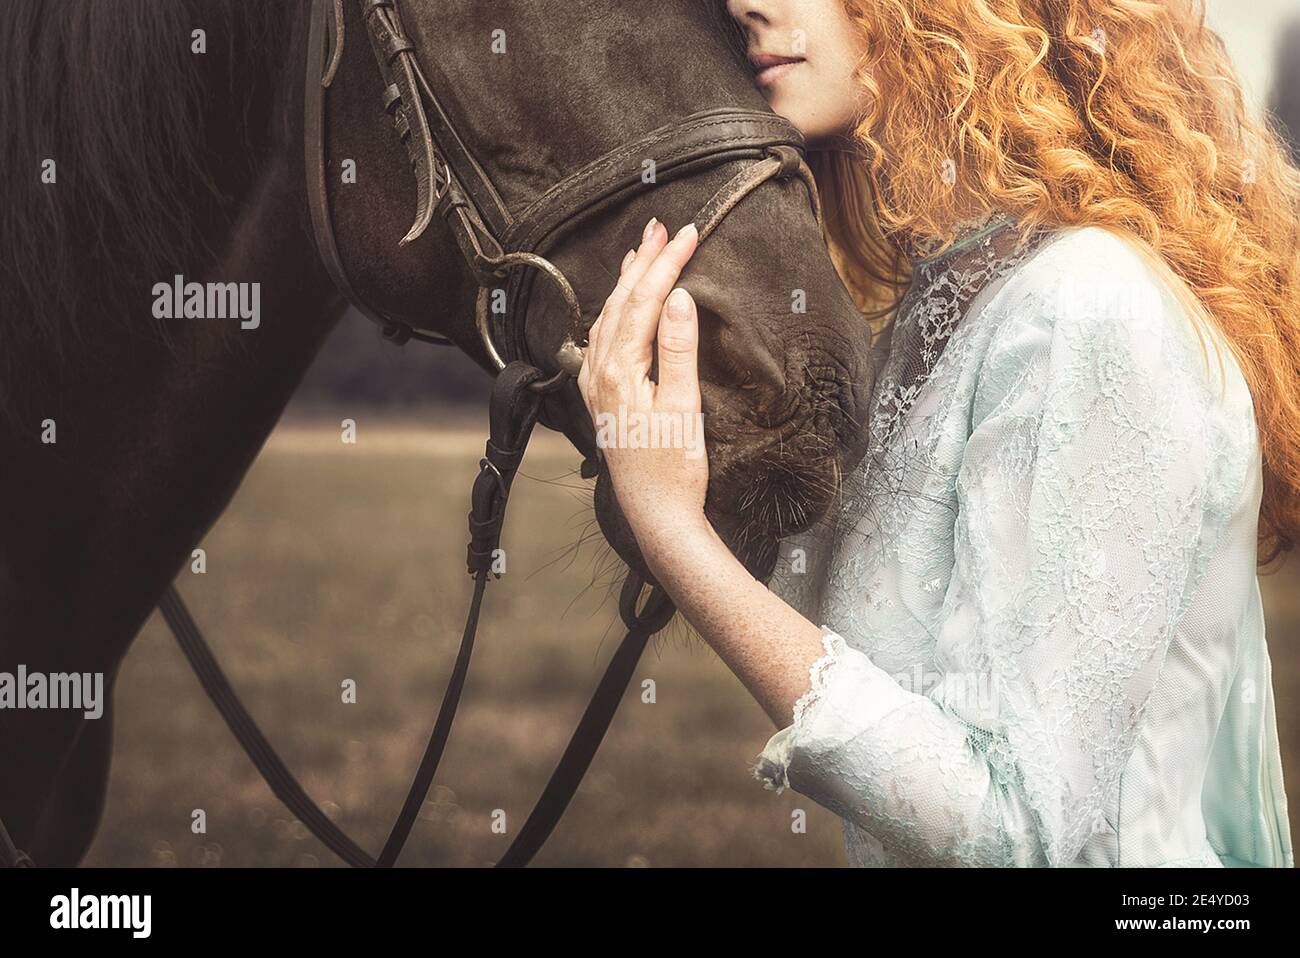 Liebe für Tiere. Junge Frau ohne Gesicht in einem eleganten Vintage-Kleid gekleidet, sanft Kuscheln ein Pferd, streichelte seinen Kopf. Stockfoto